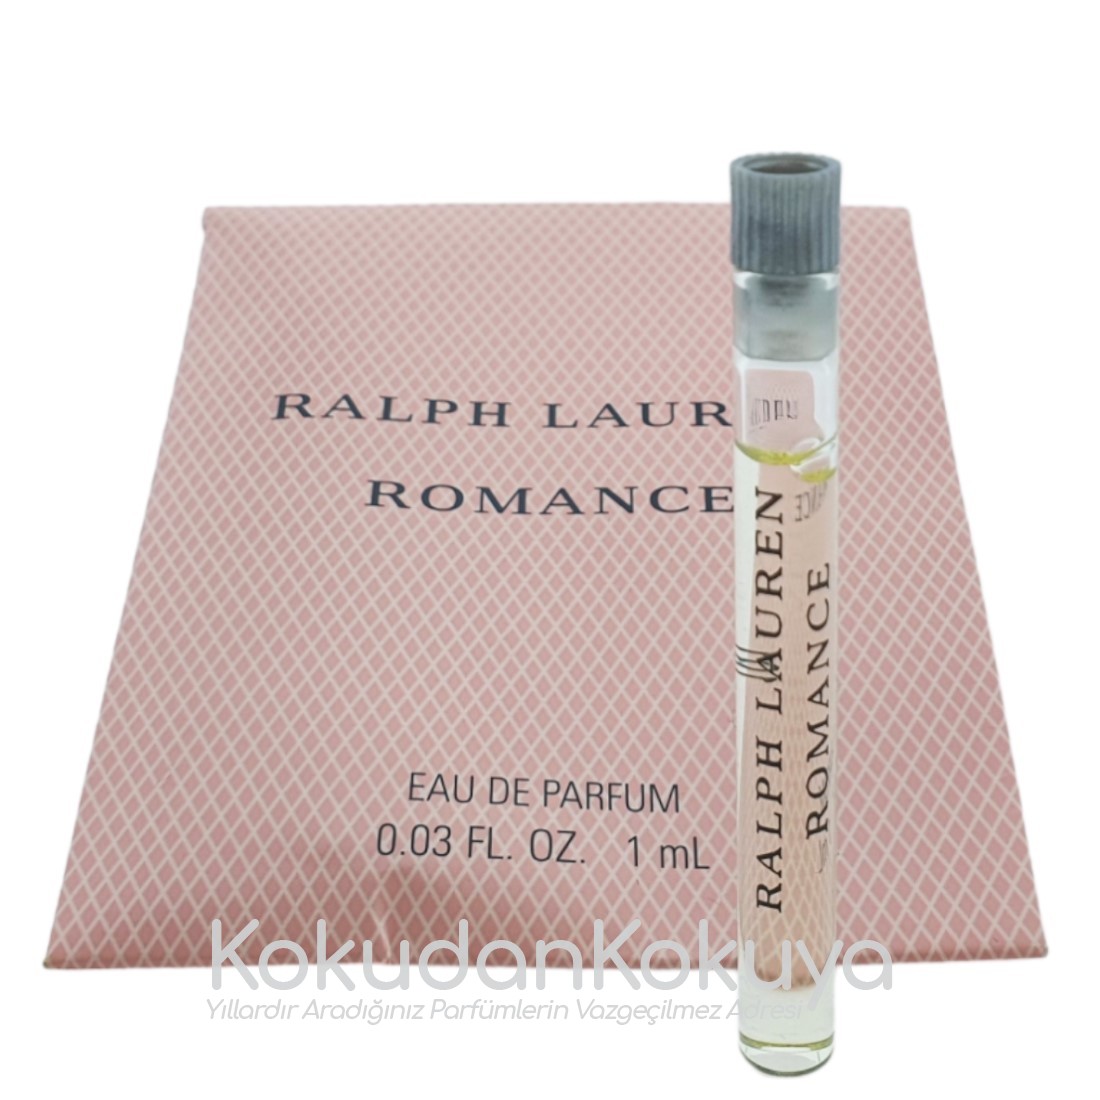 RALPH LAUREN Romance (Vintage) Parfüm Kadın 1ml Minyatür (Mini Perfume) Dökme 